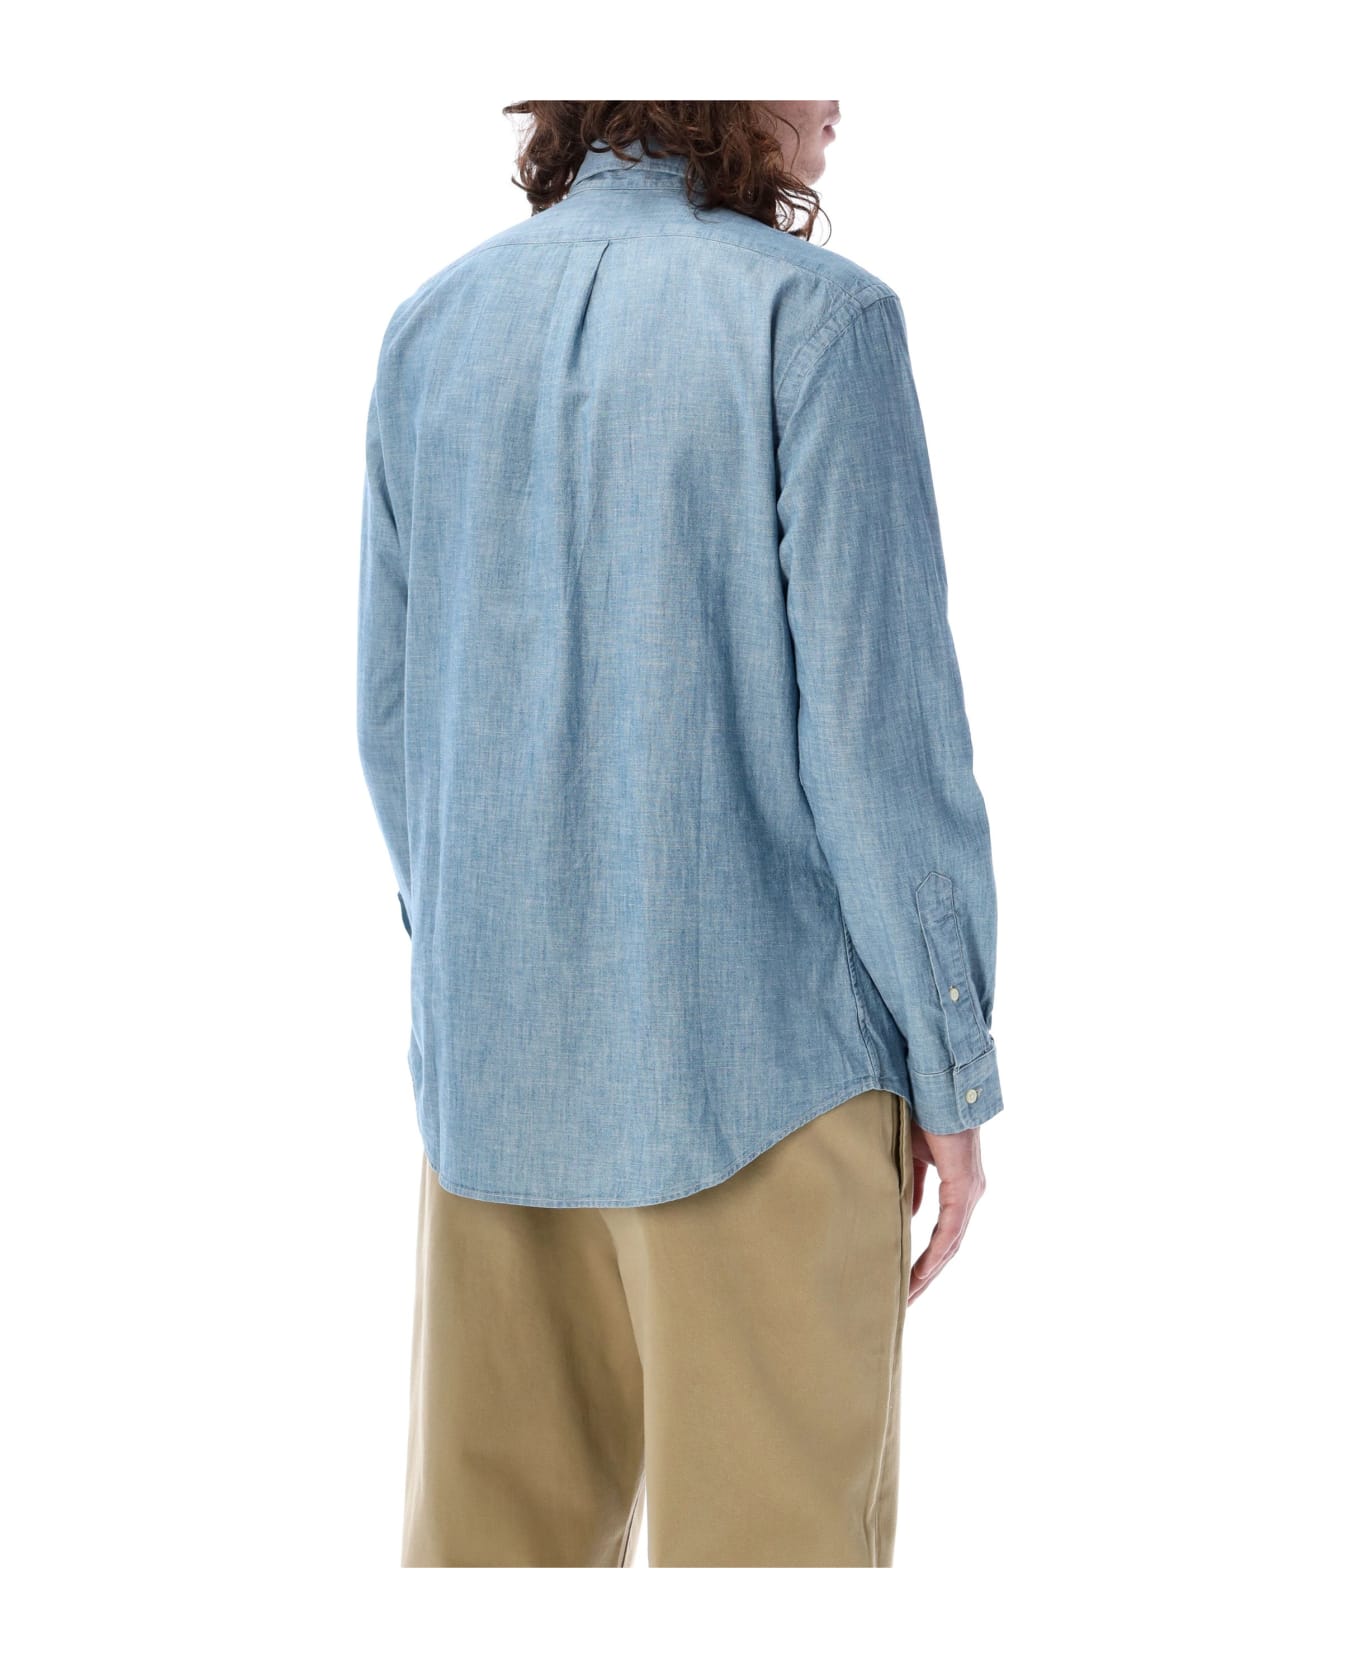 Polo Ralph Lauren Denim Shirt - LIGHT BLUE